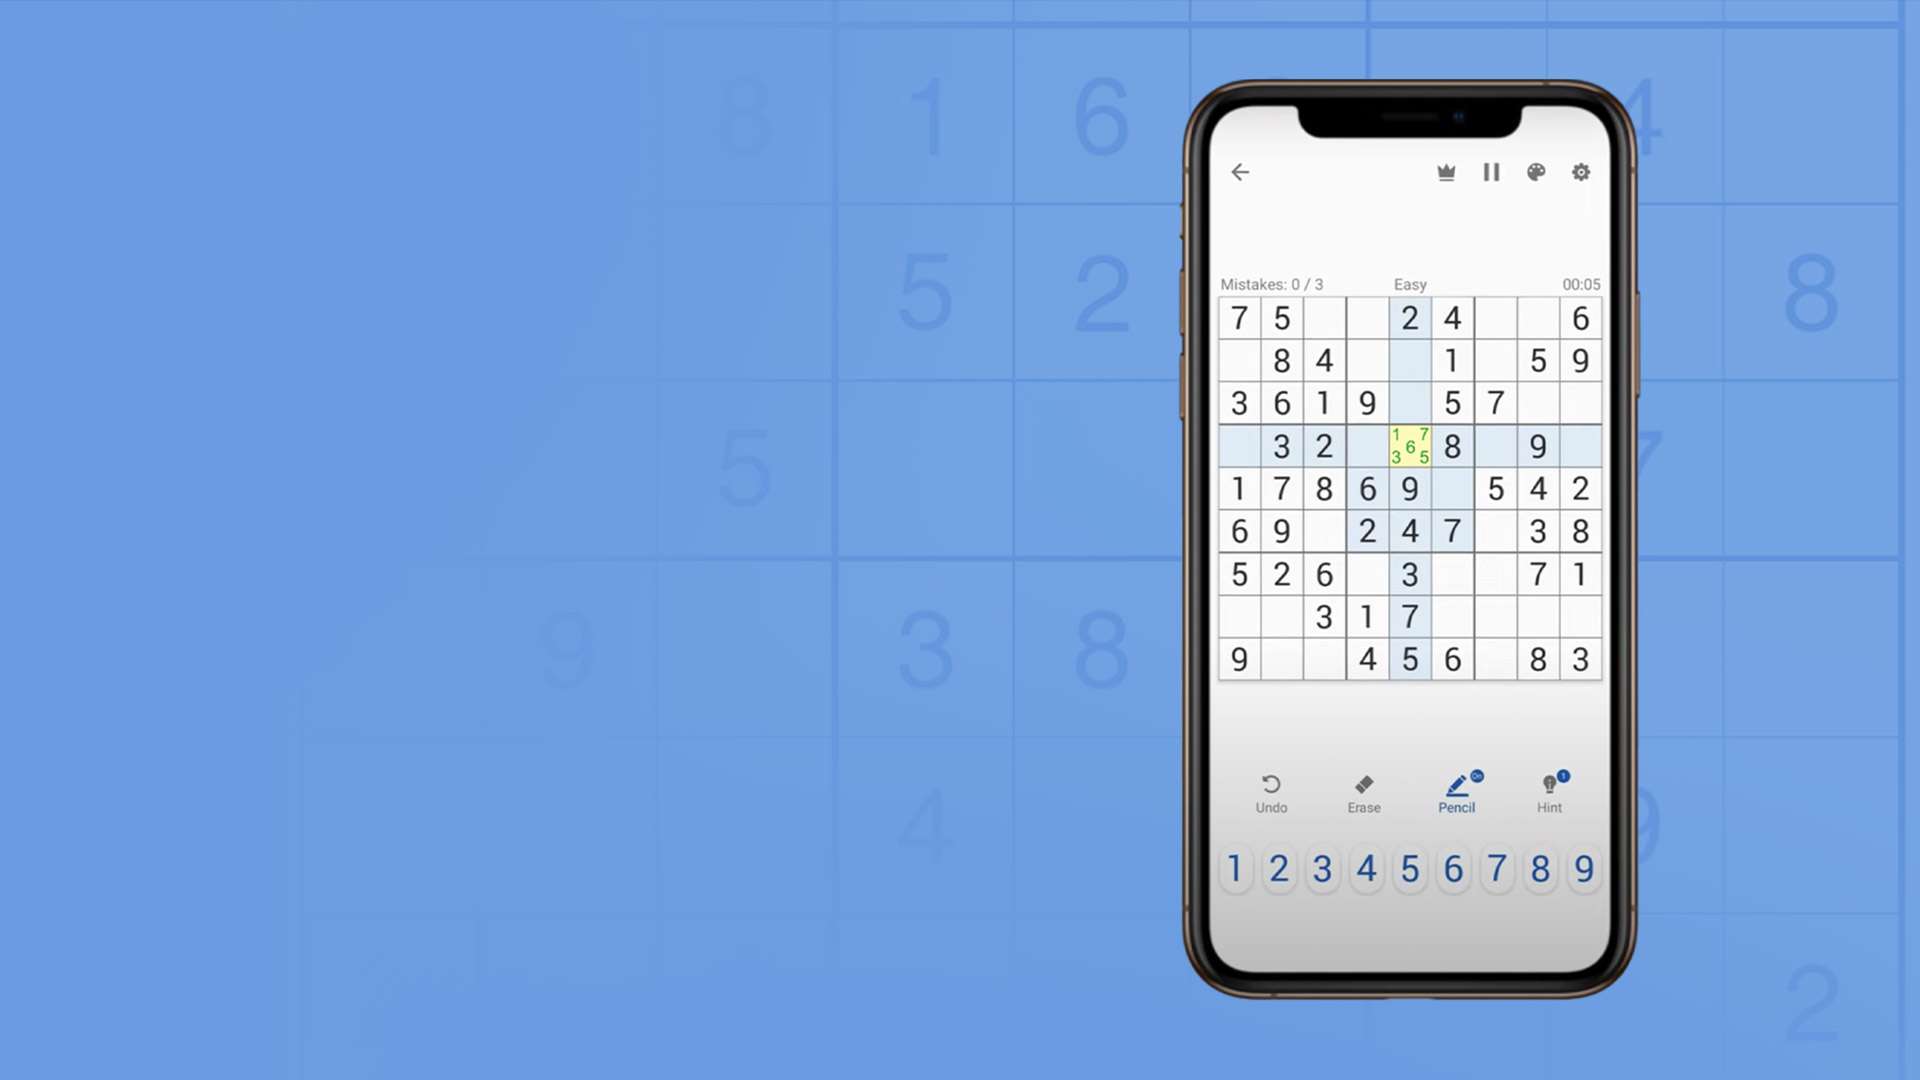 Sudoku Jogo Clássico versão móvel andróide iOS apk baixar gratuitamente -TapTap